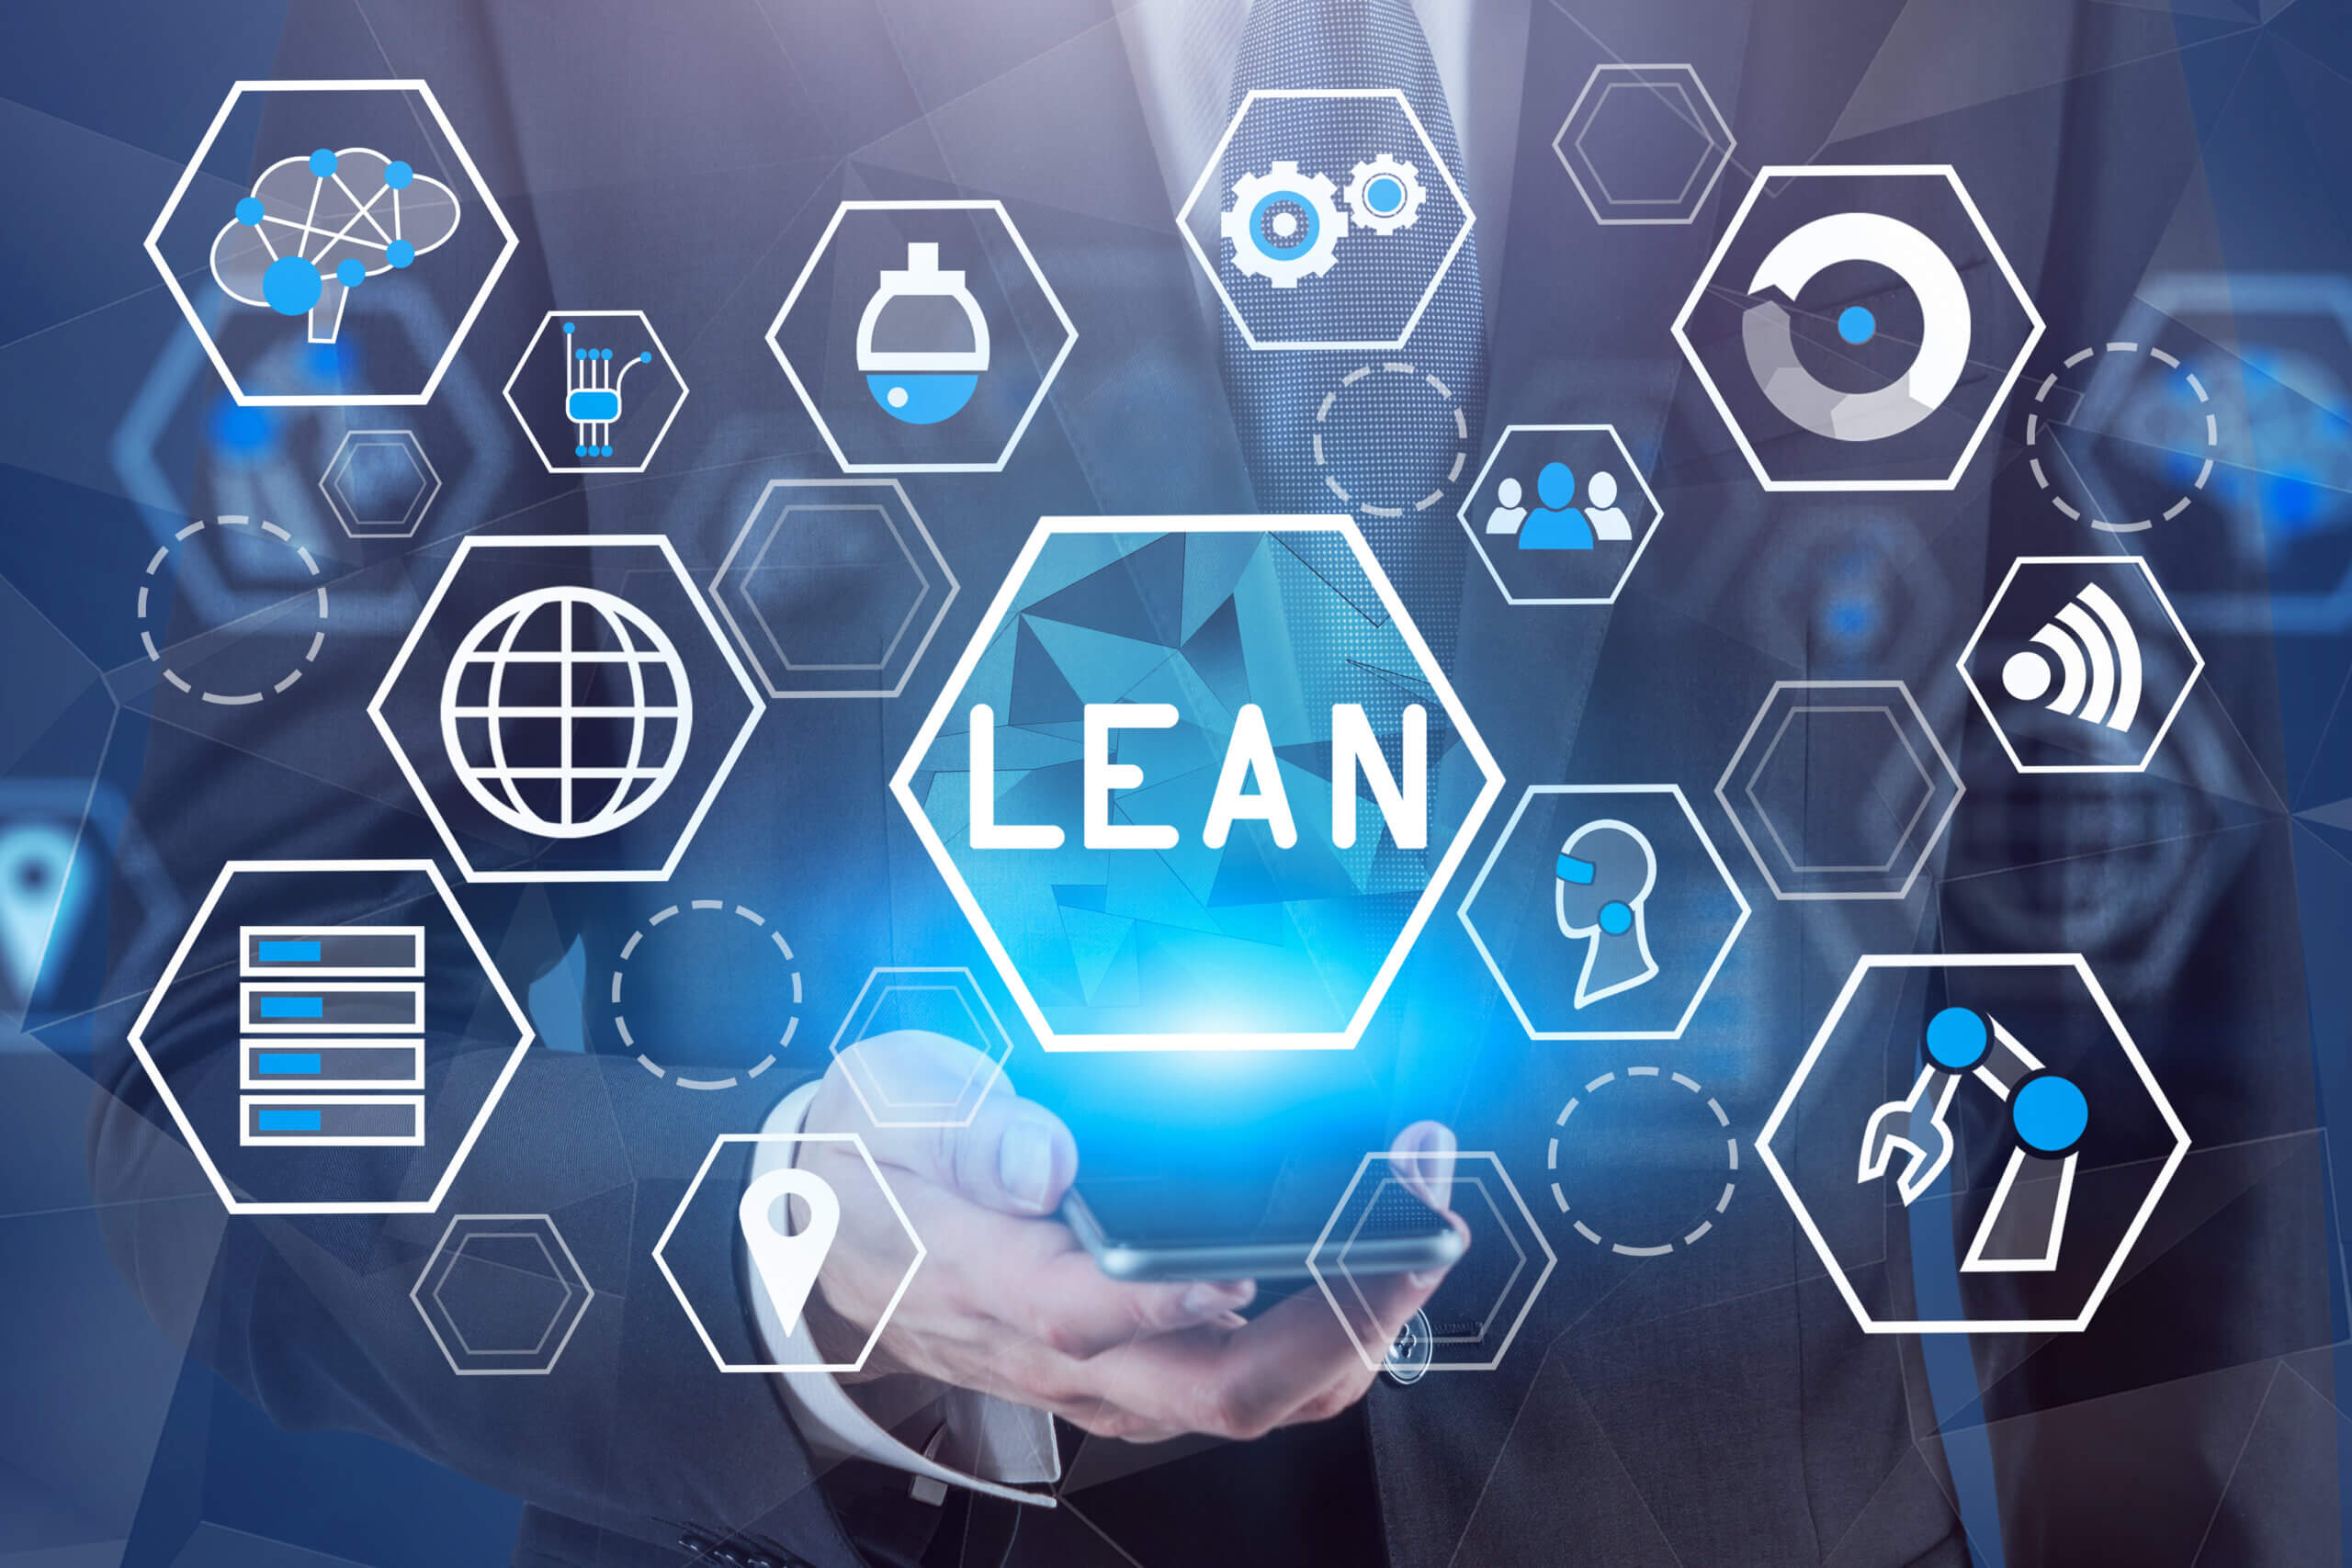 Definitie, tools en voordelen van lean management